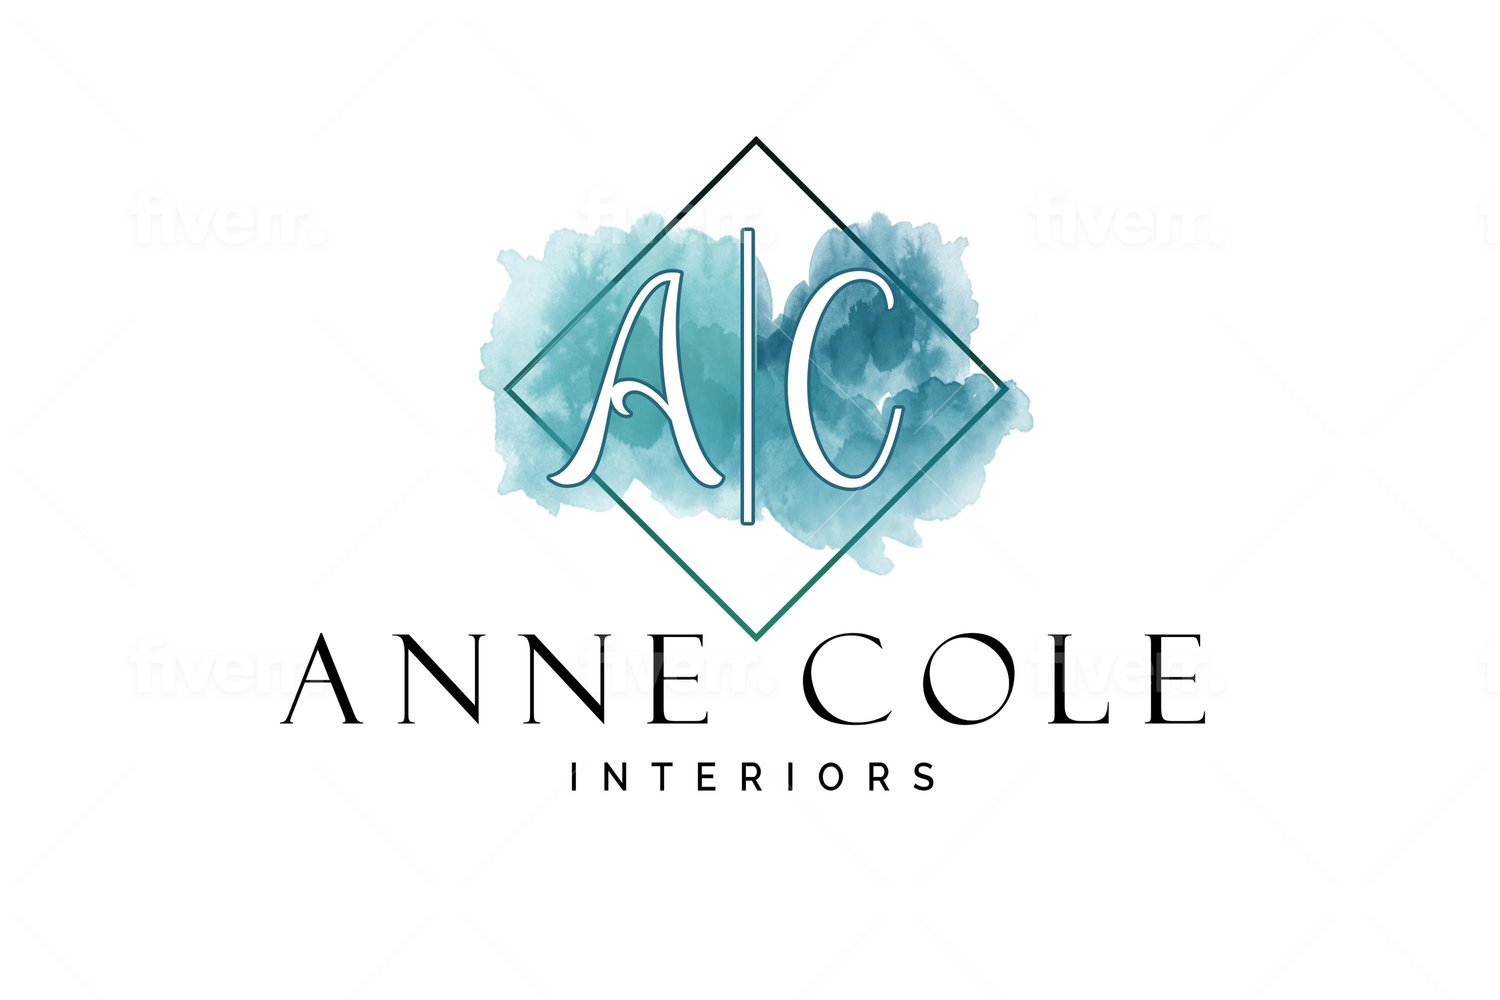 Anne Cole Interiors